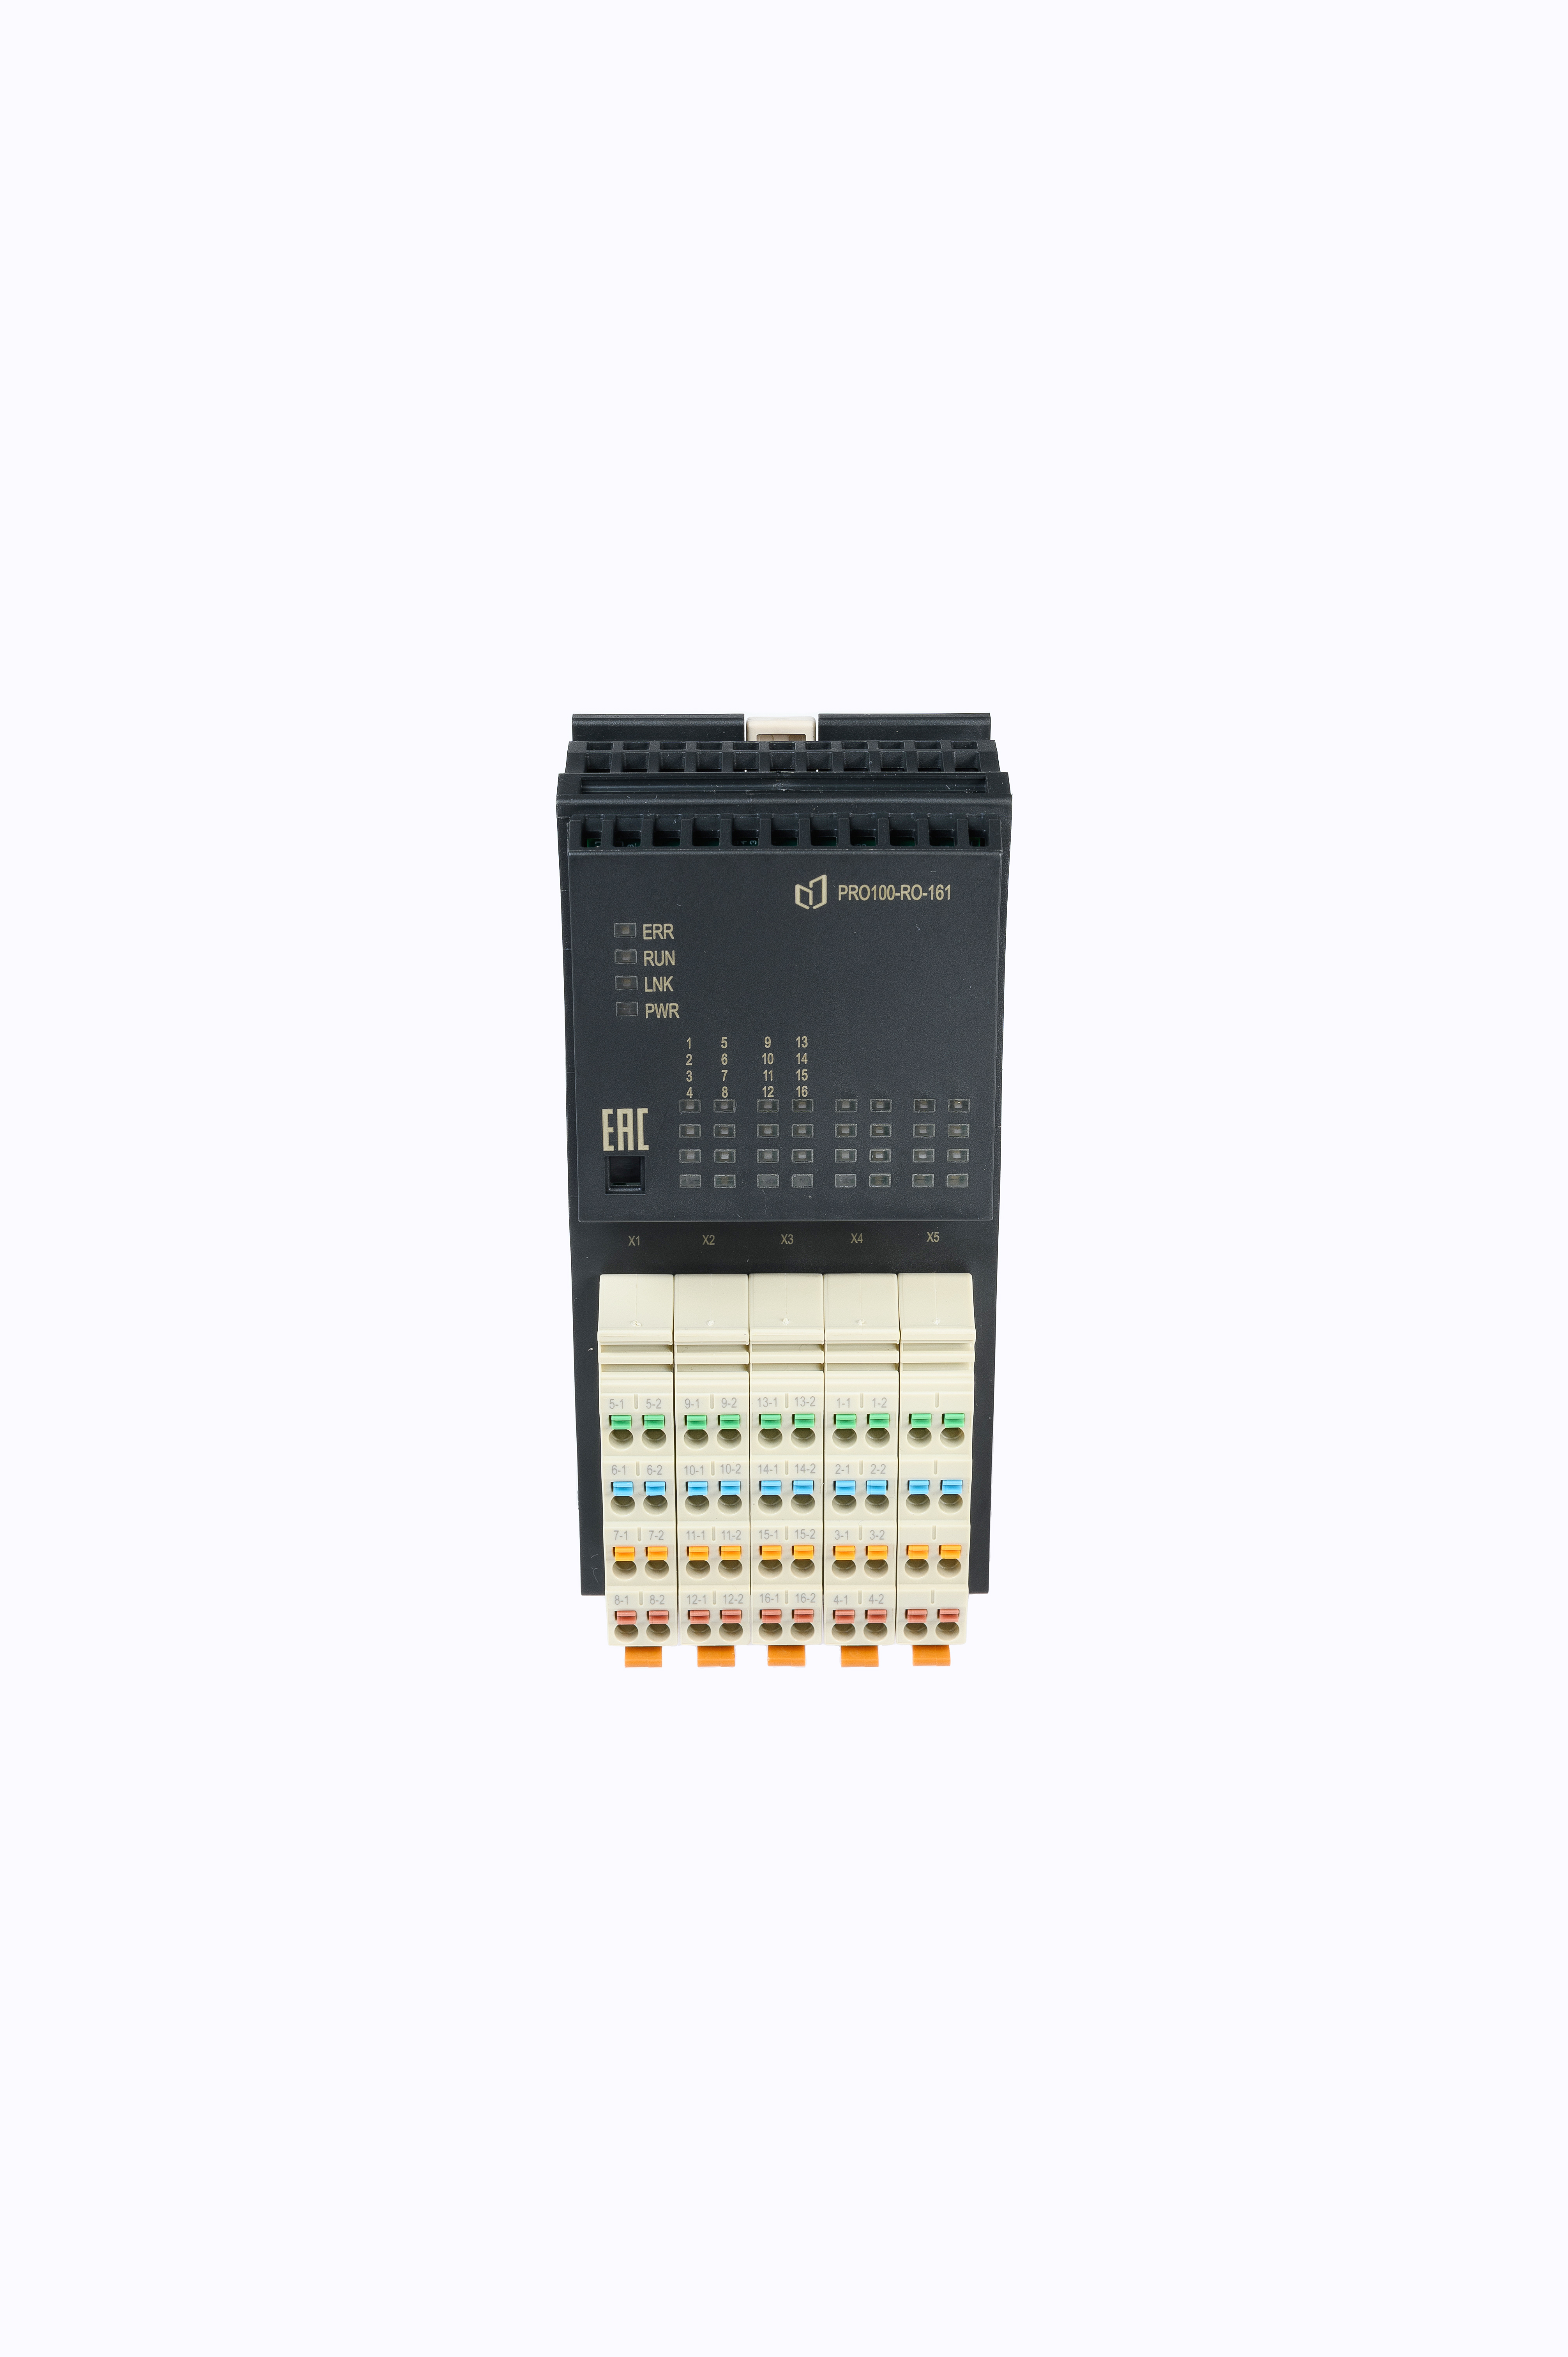 Модуль релейного вывода 16 каналов PRO100-RO-161